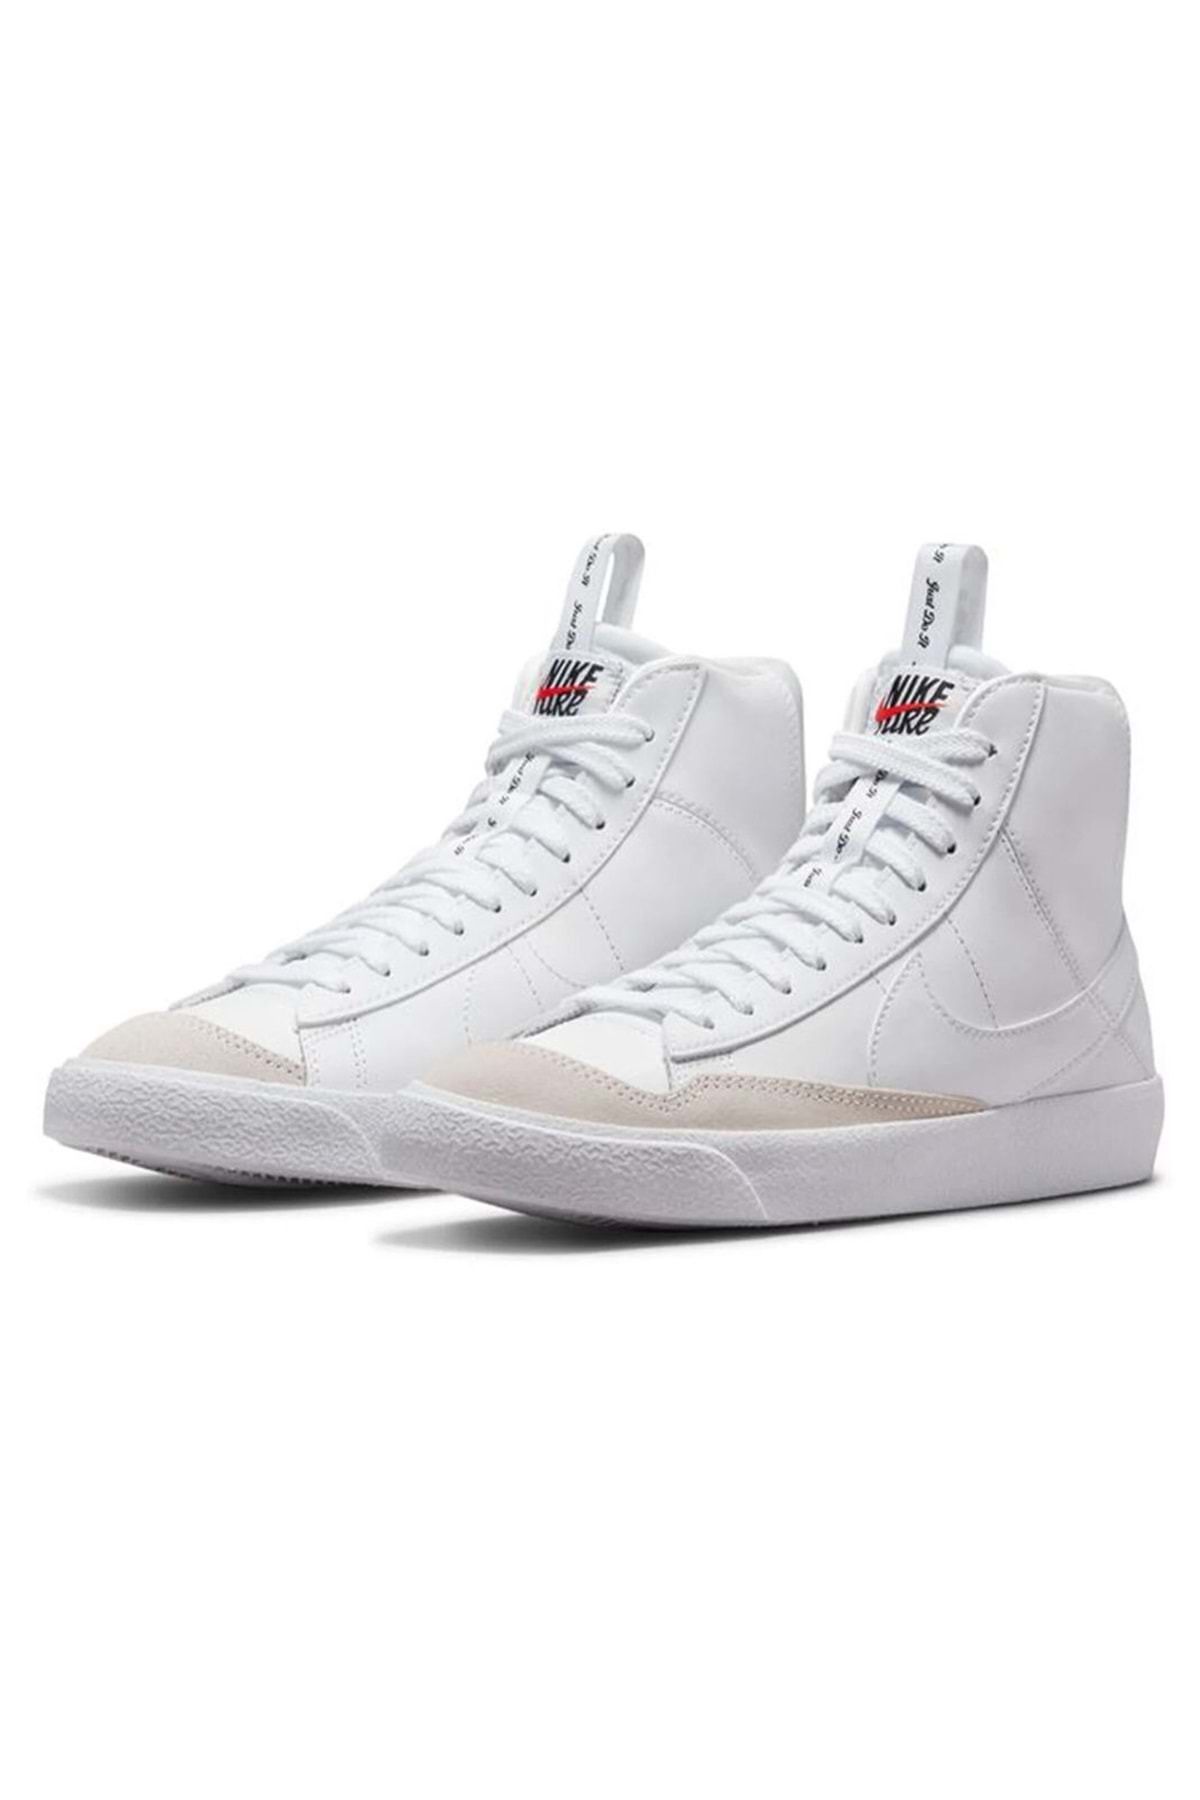 Nike Blazer Mid '77 Se D (GS) Dh8640-102 Boğazlı Unisex Spor Ayakkabı Beyaz